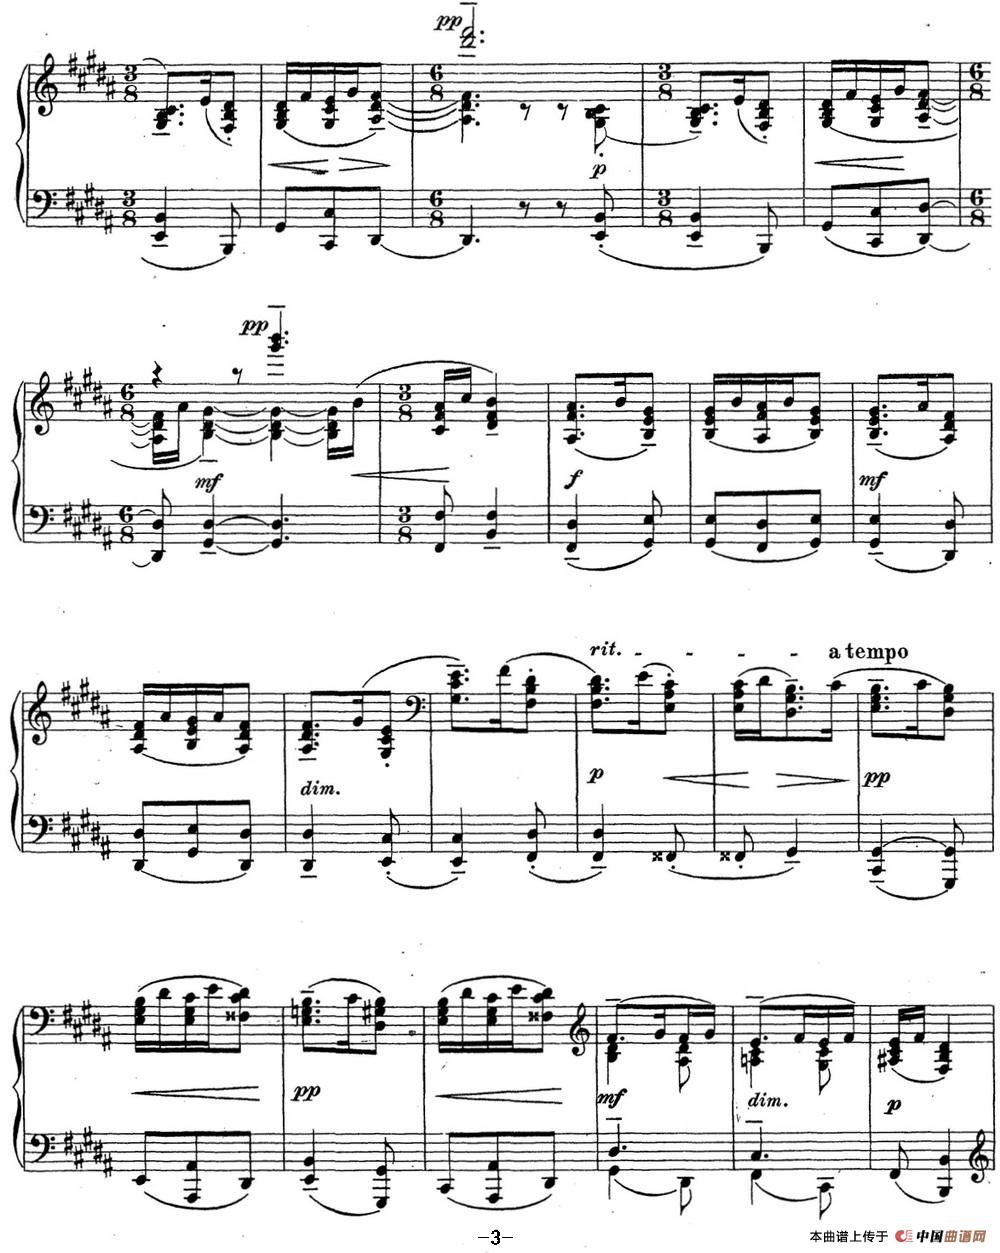 《拉赫玛尼诺夫 钢琴前奏曲22 B大调 Op.32 No.11》钢琴曲谱图分享